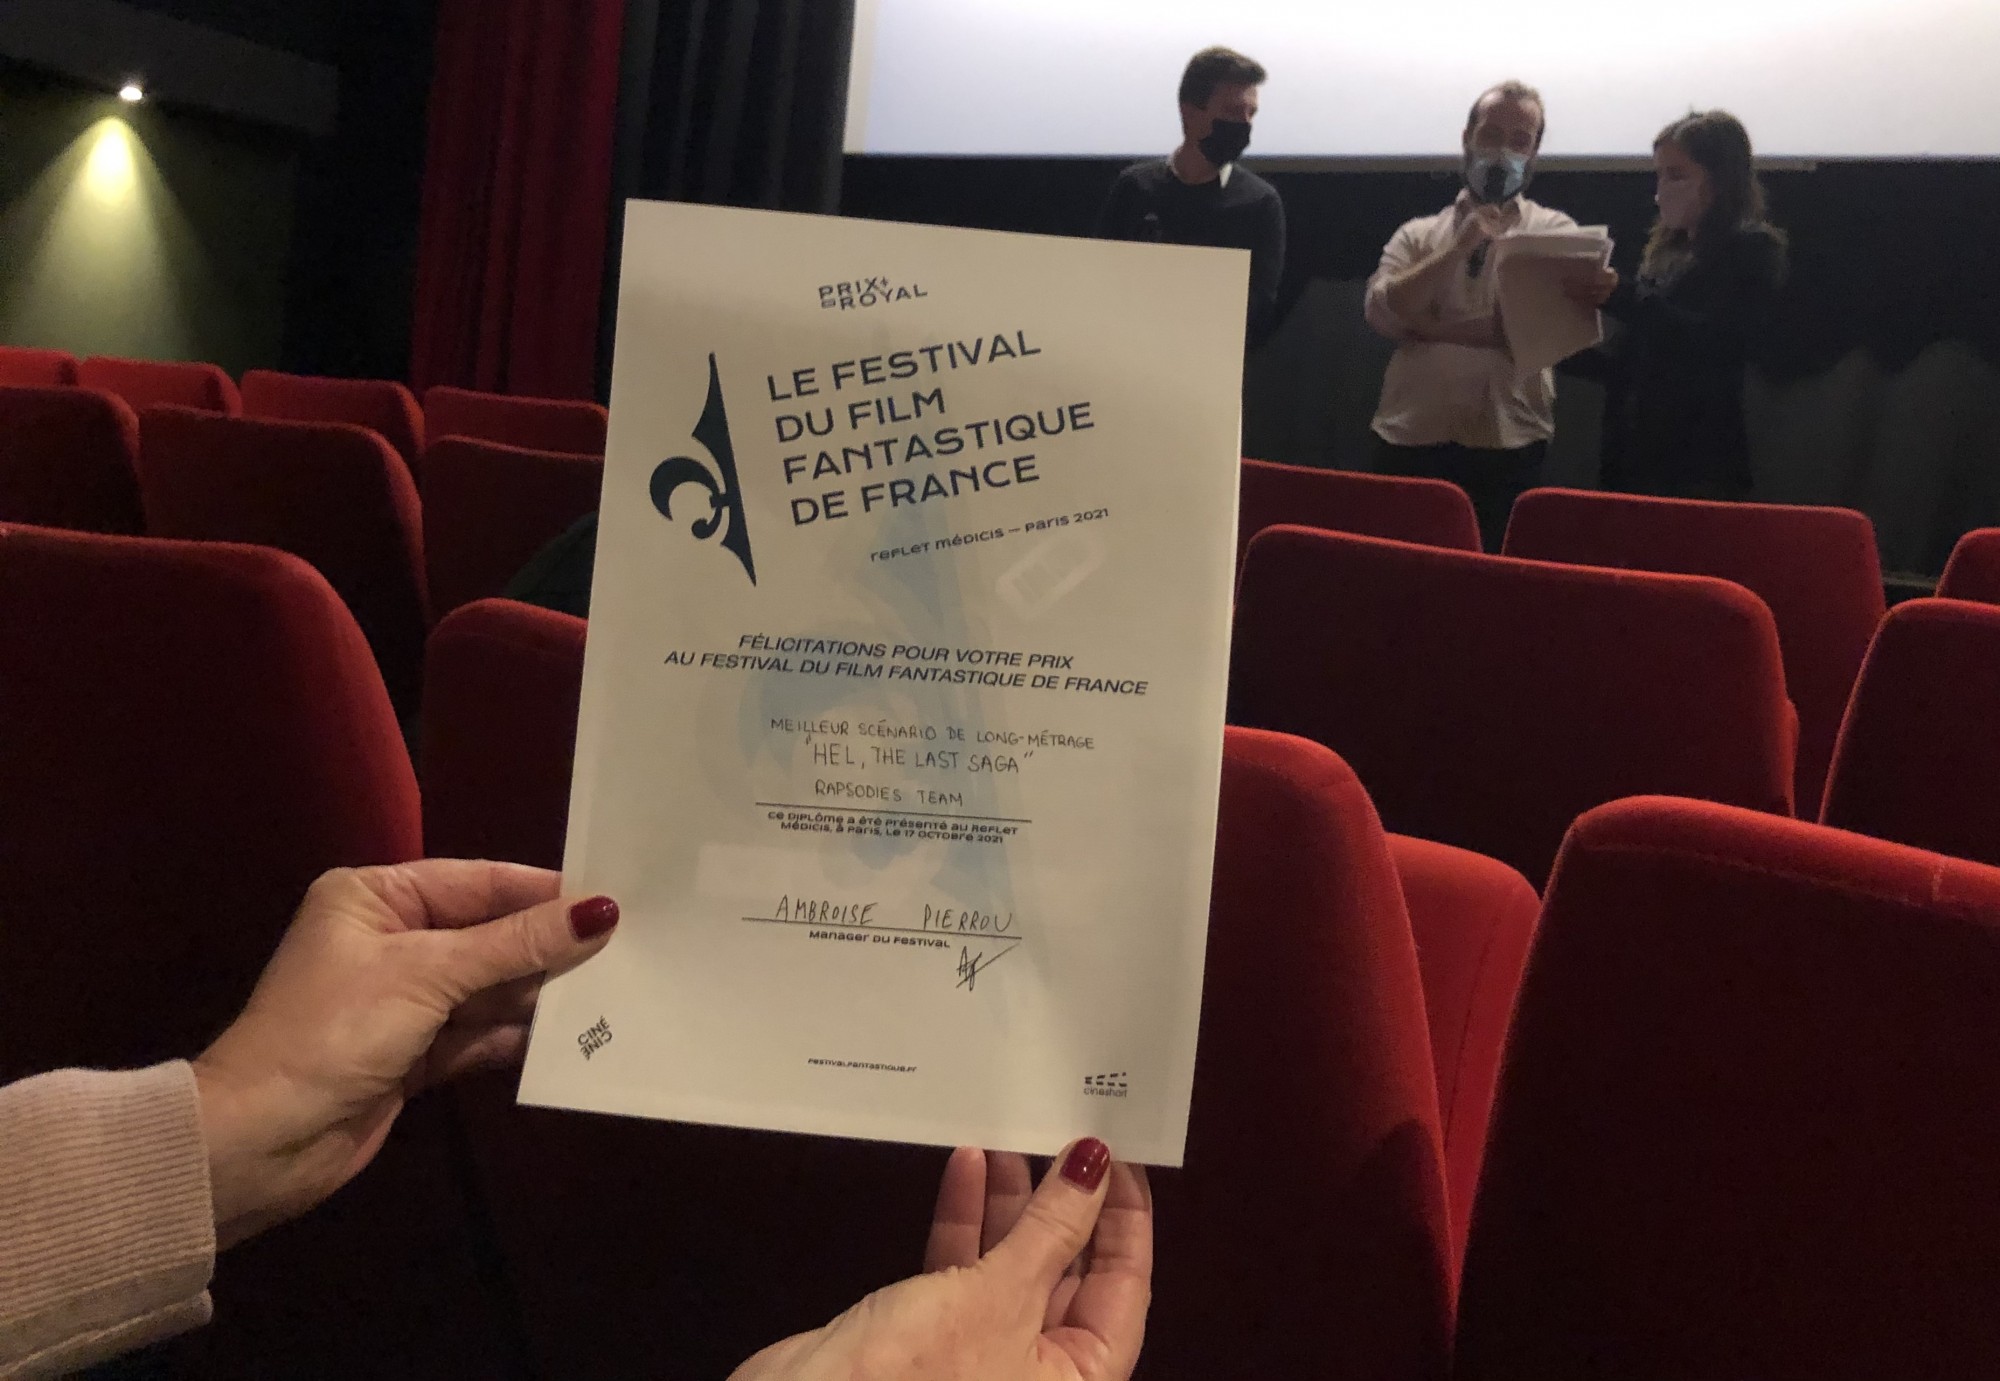 Le Festival du Film Fantastique de France